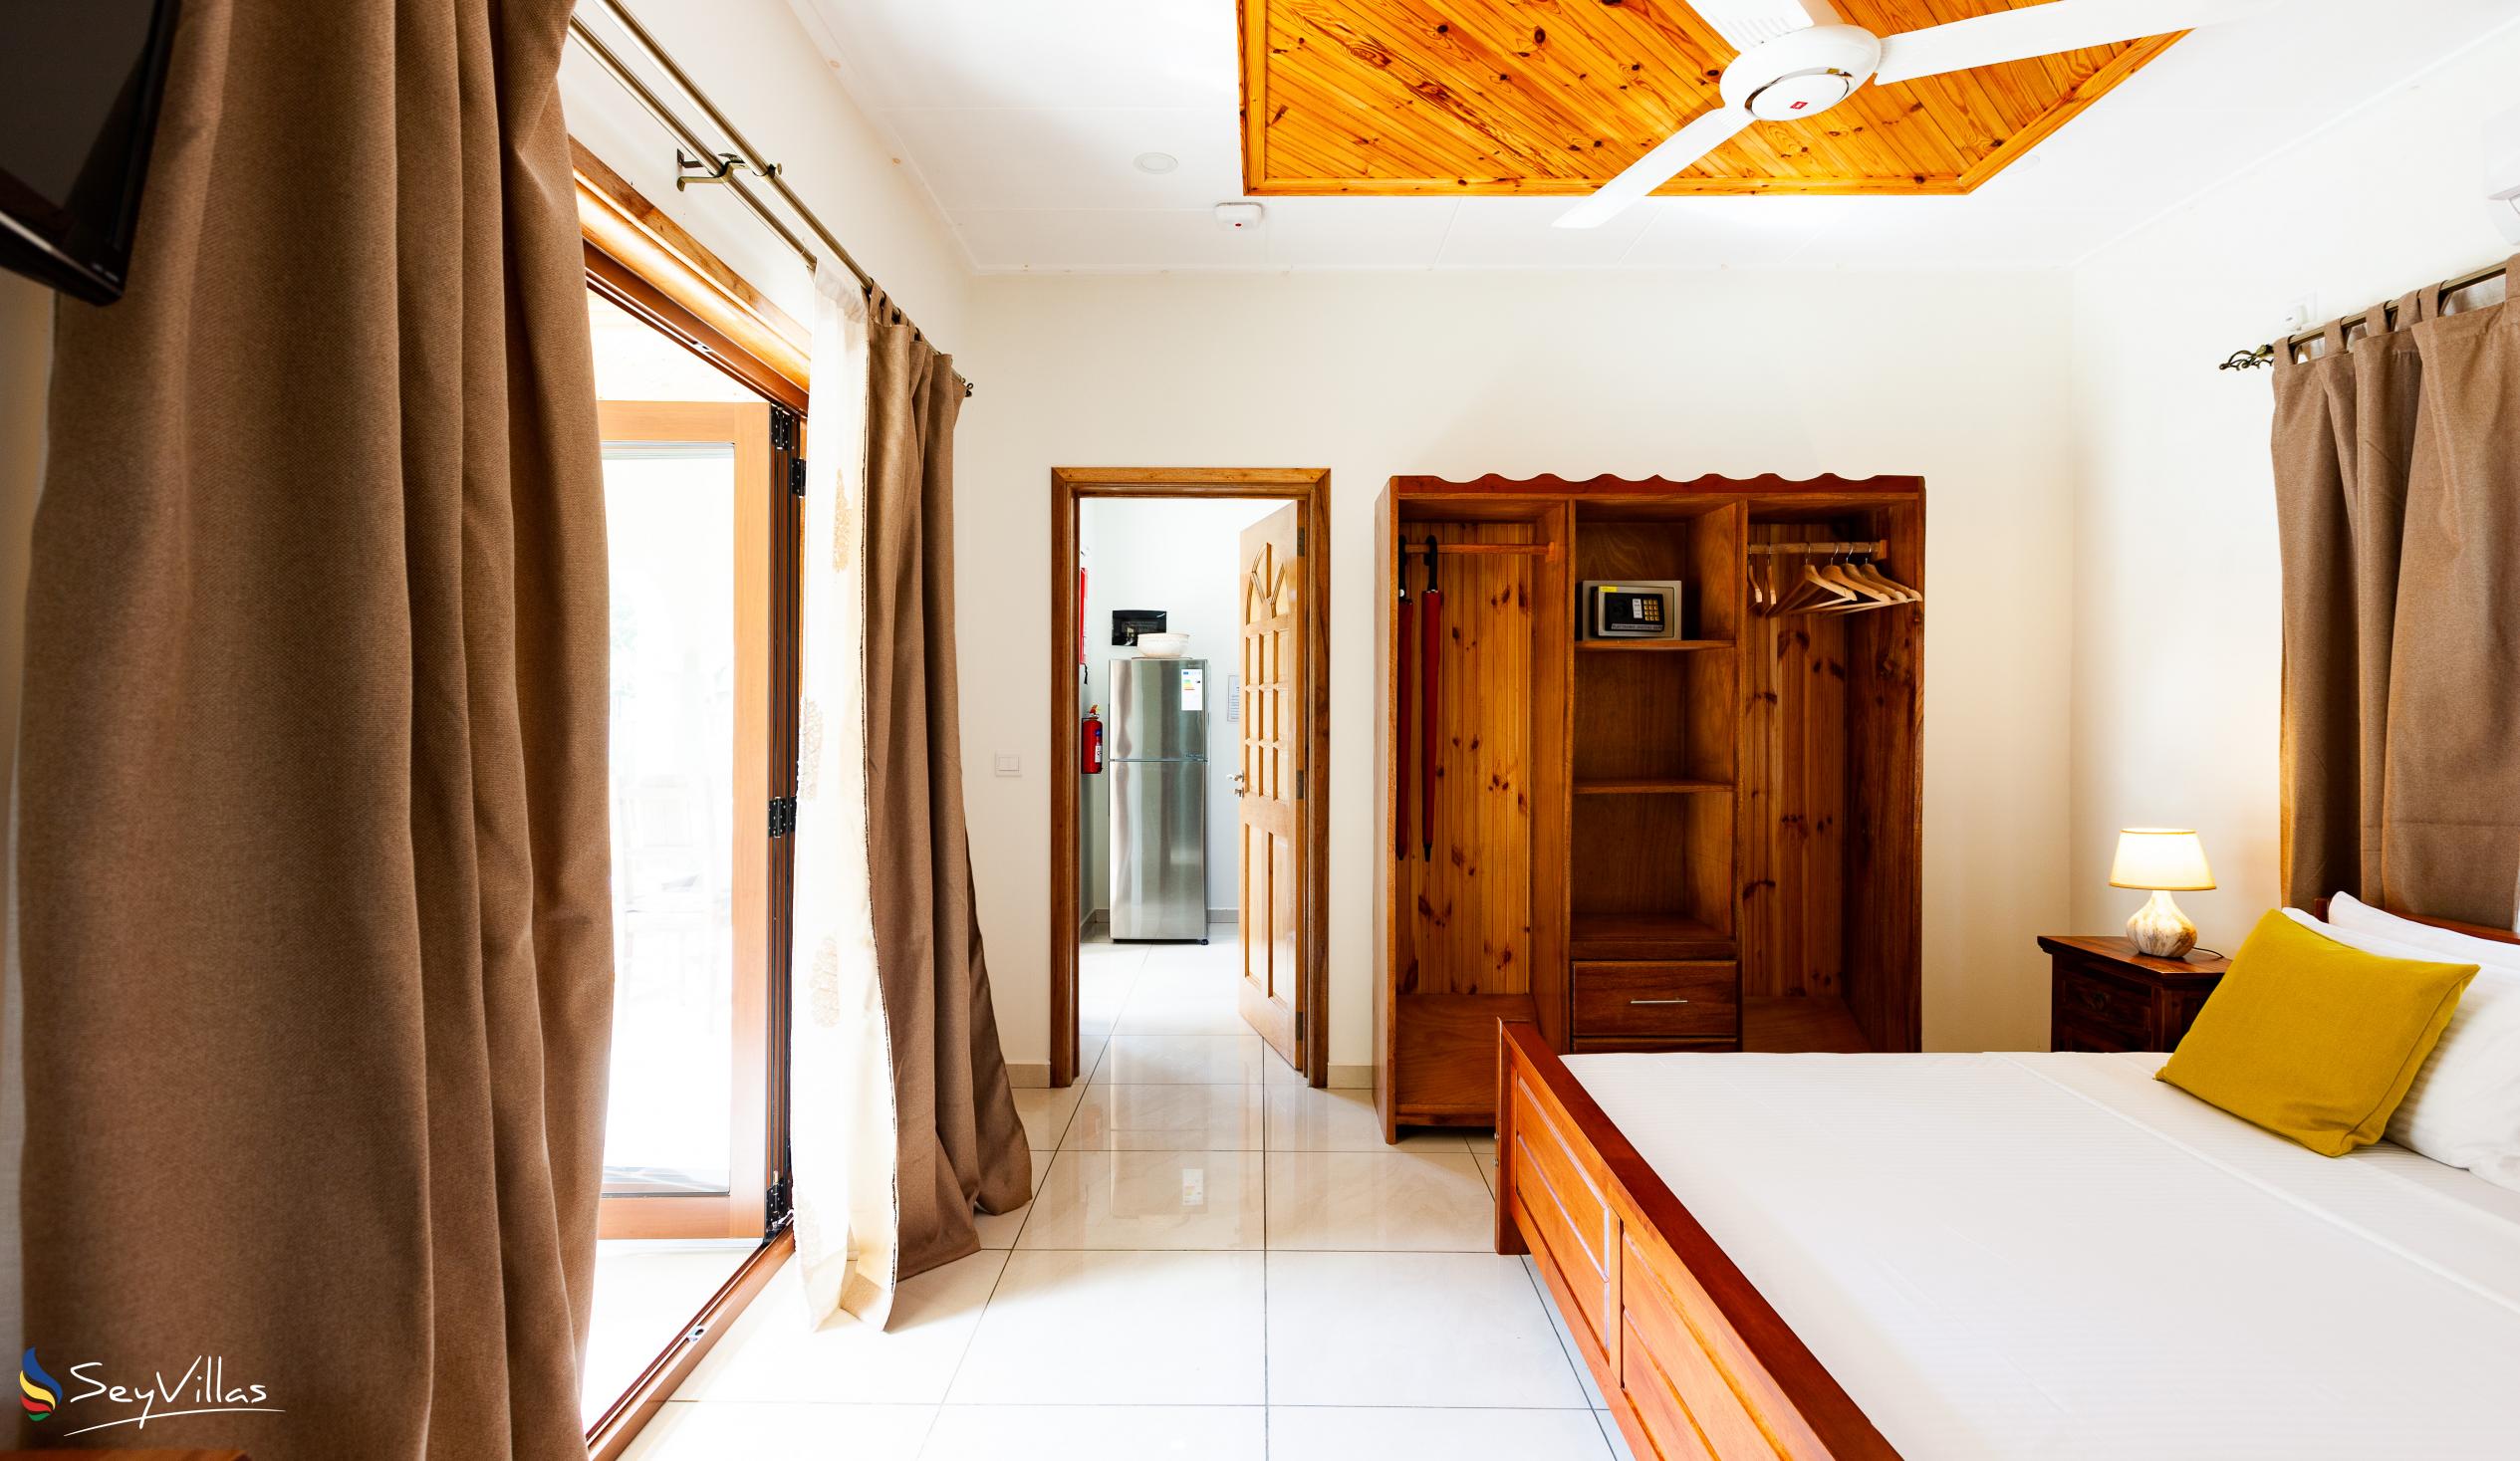 Foto 22: Maison Ed-Elle - Appartement 1 chambre - La Digue (Seychelles)